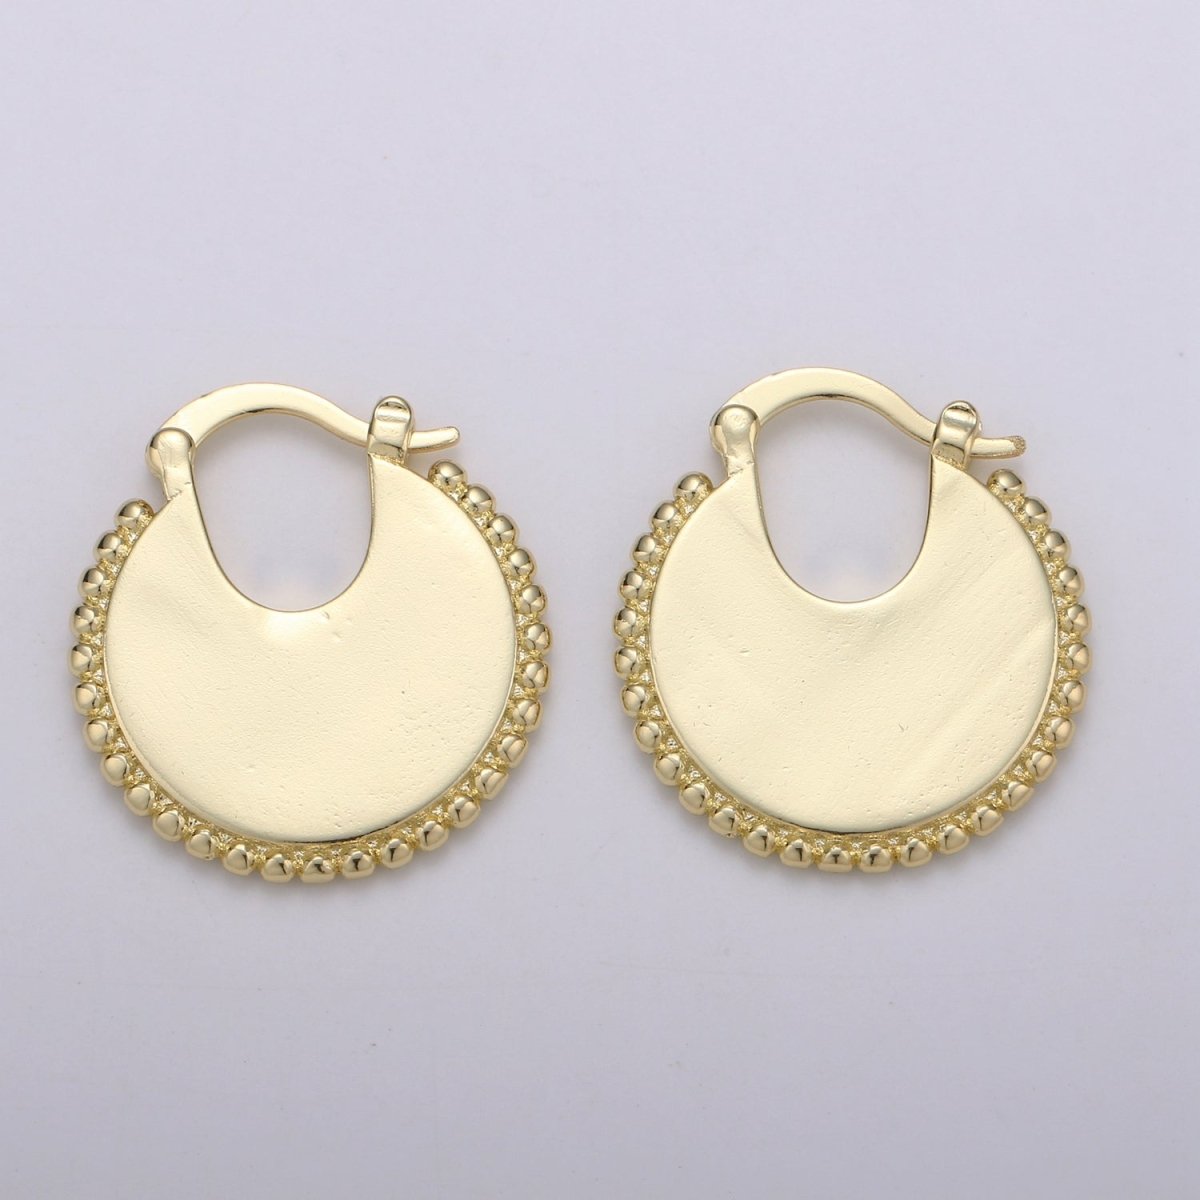 Big Statement Gold Earrings, Gold Fan Earrings, Large Gold Earrings, Women Big Earrings Bold Statement Jewelry Q-337 - DLUXCA